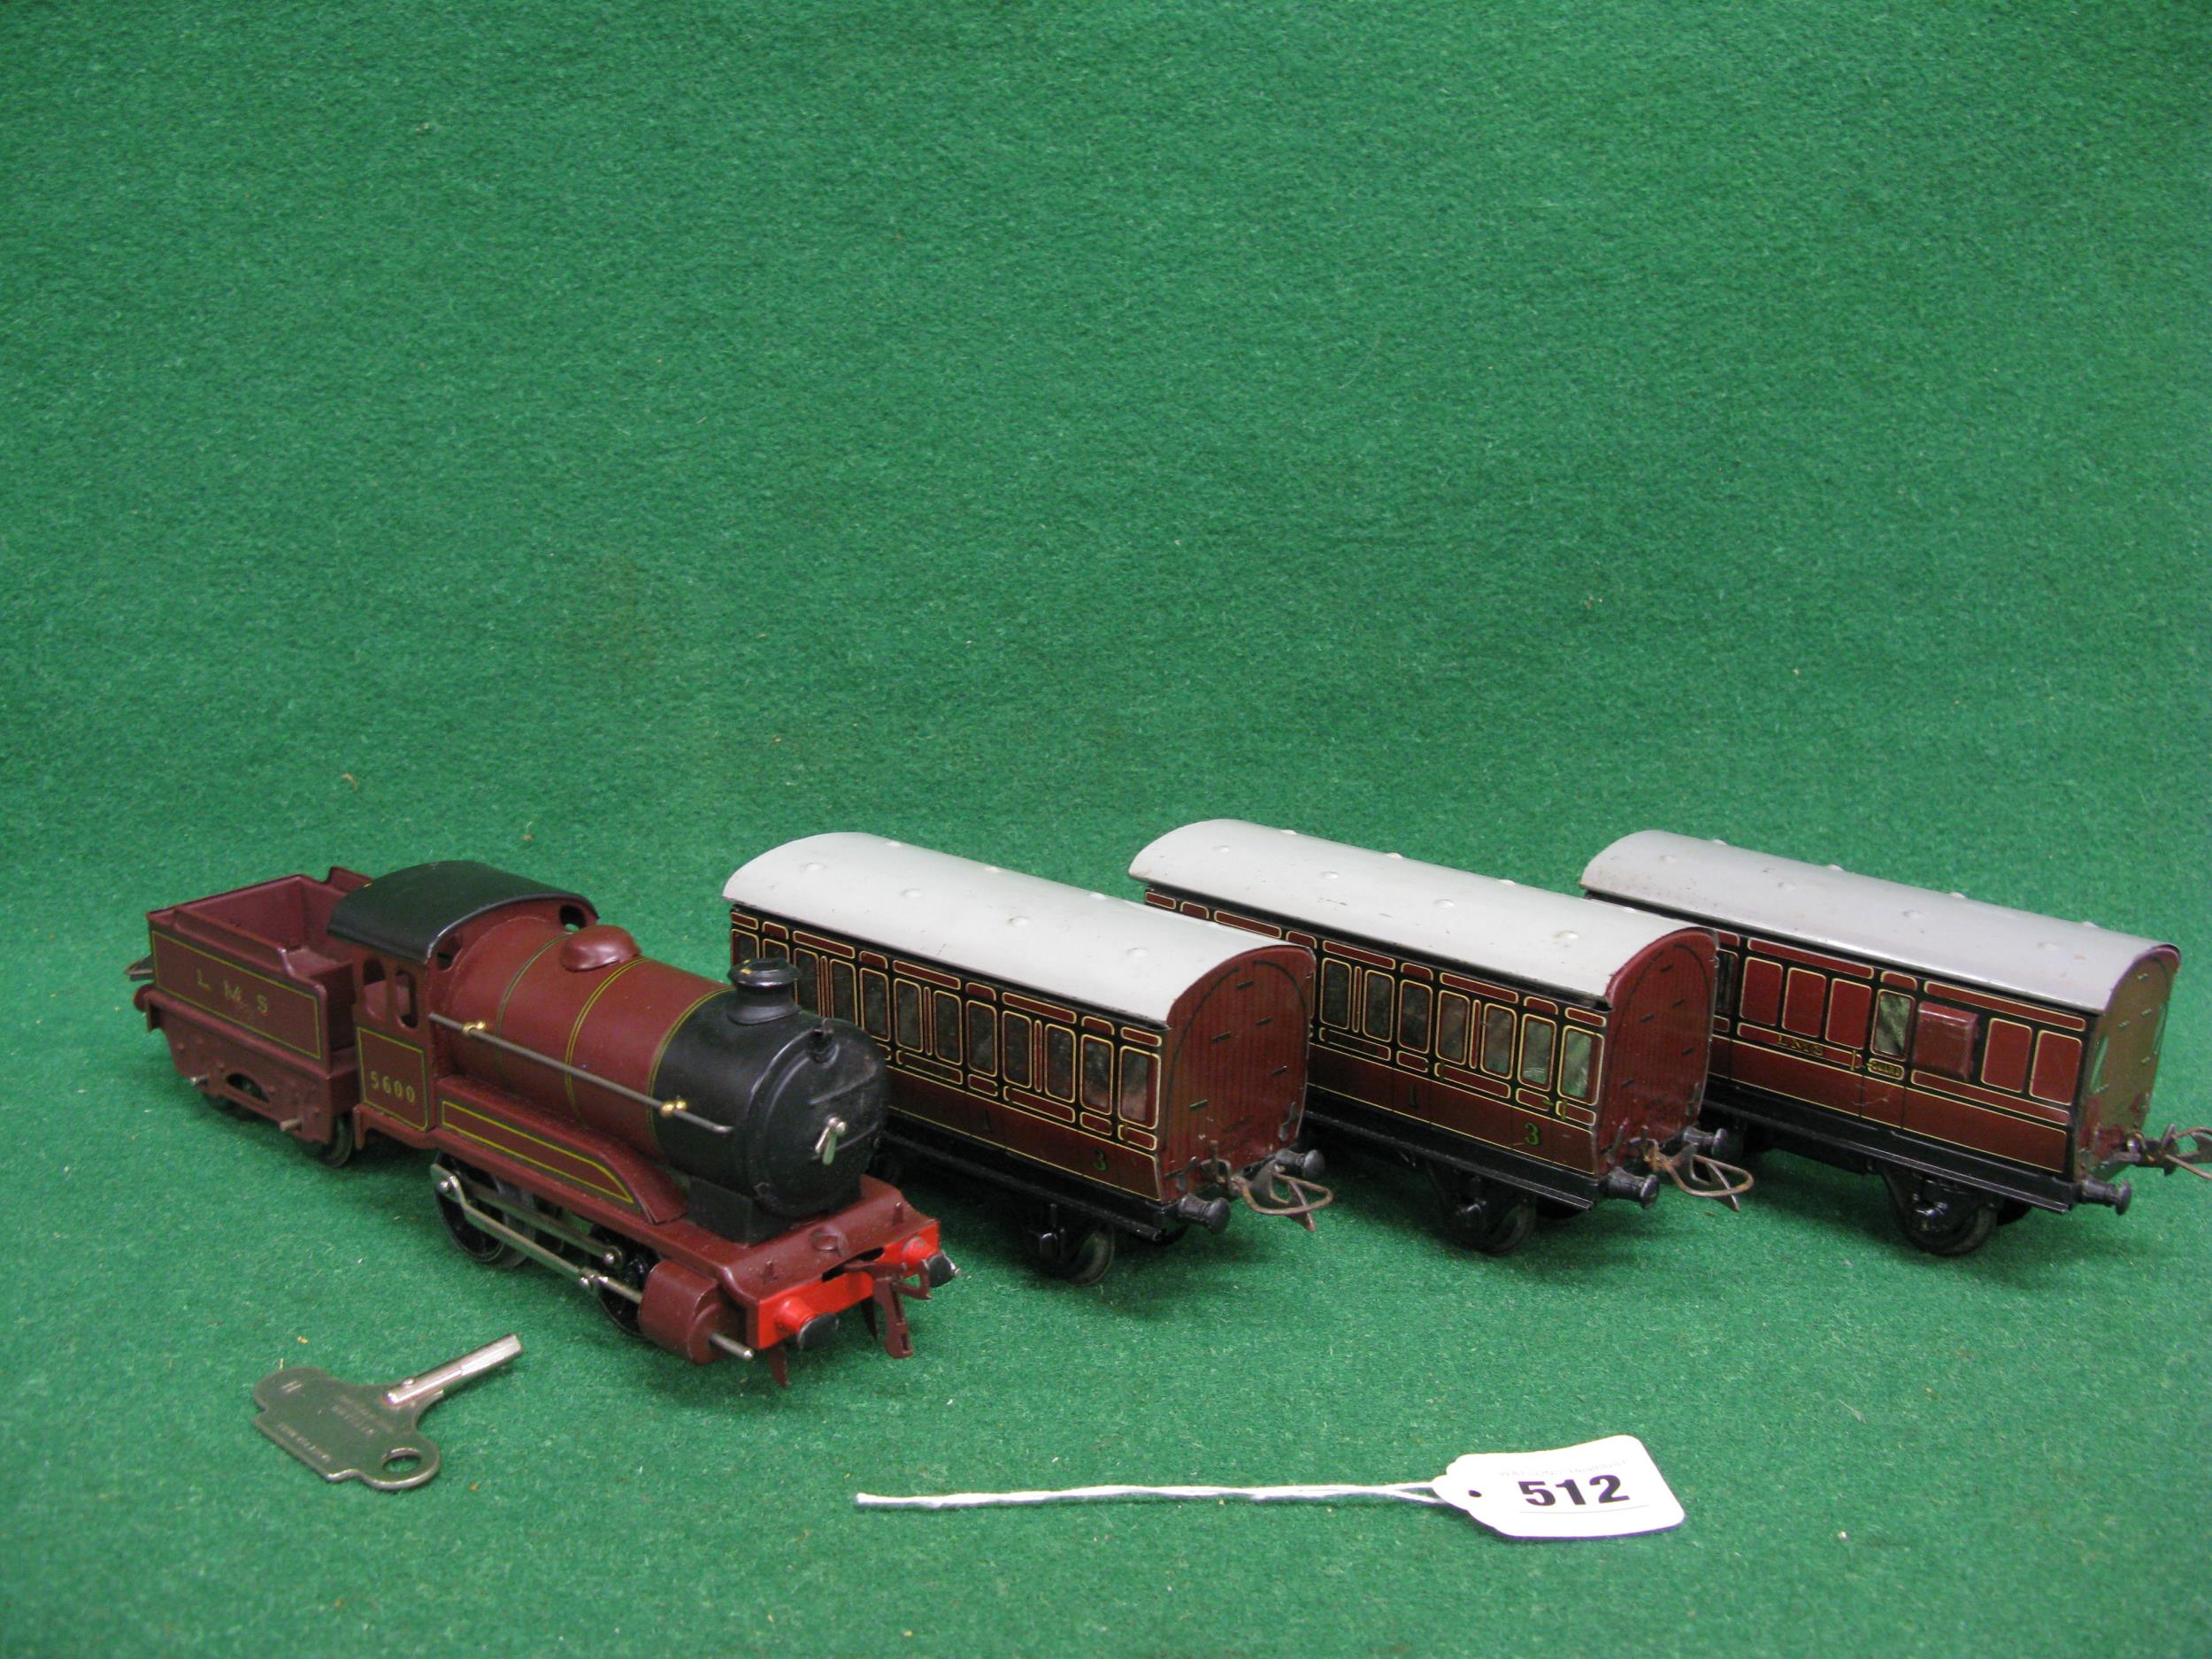 Post war boxed Hornby O gauge clockwork train set to comprise: 501 Type 0-4-0 tender locomotive - Image 4 of 6